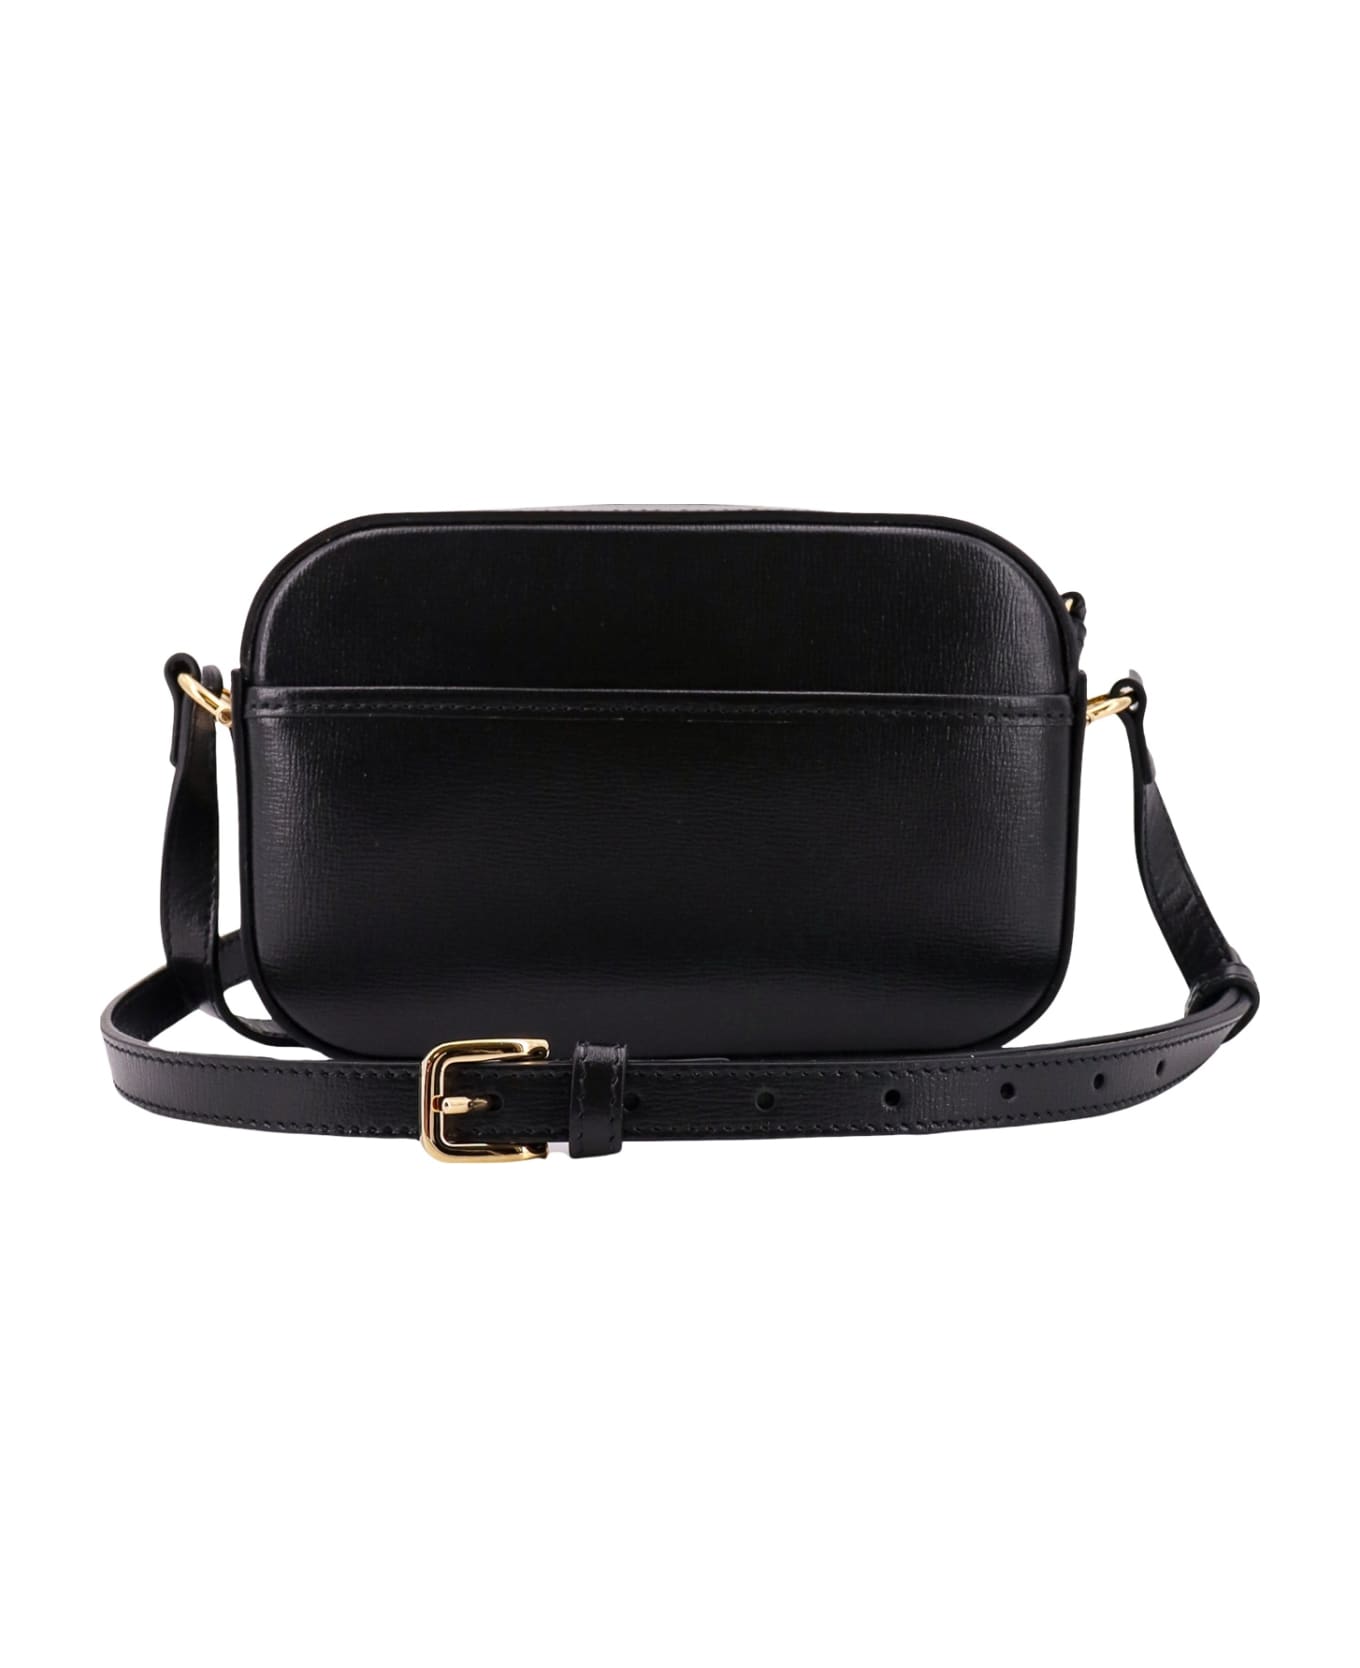 Gucci Horsebit 1955 Shoulder Bag - Black